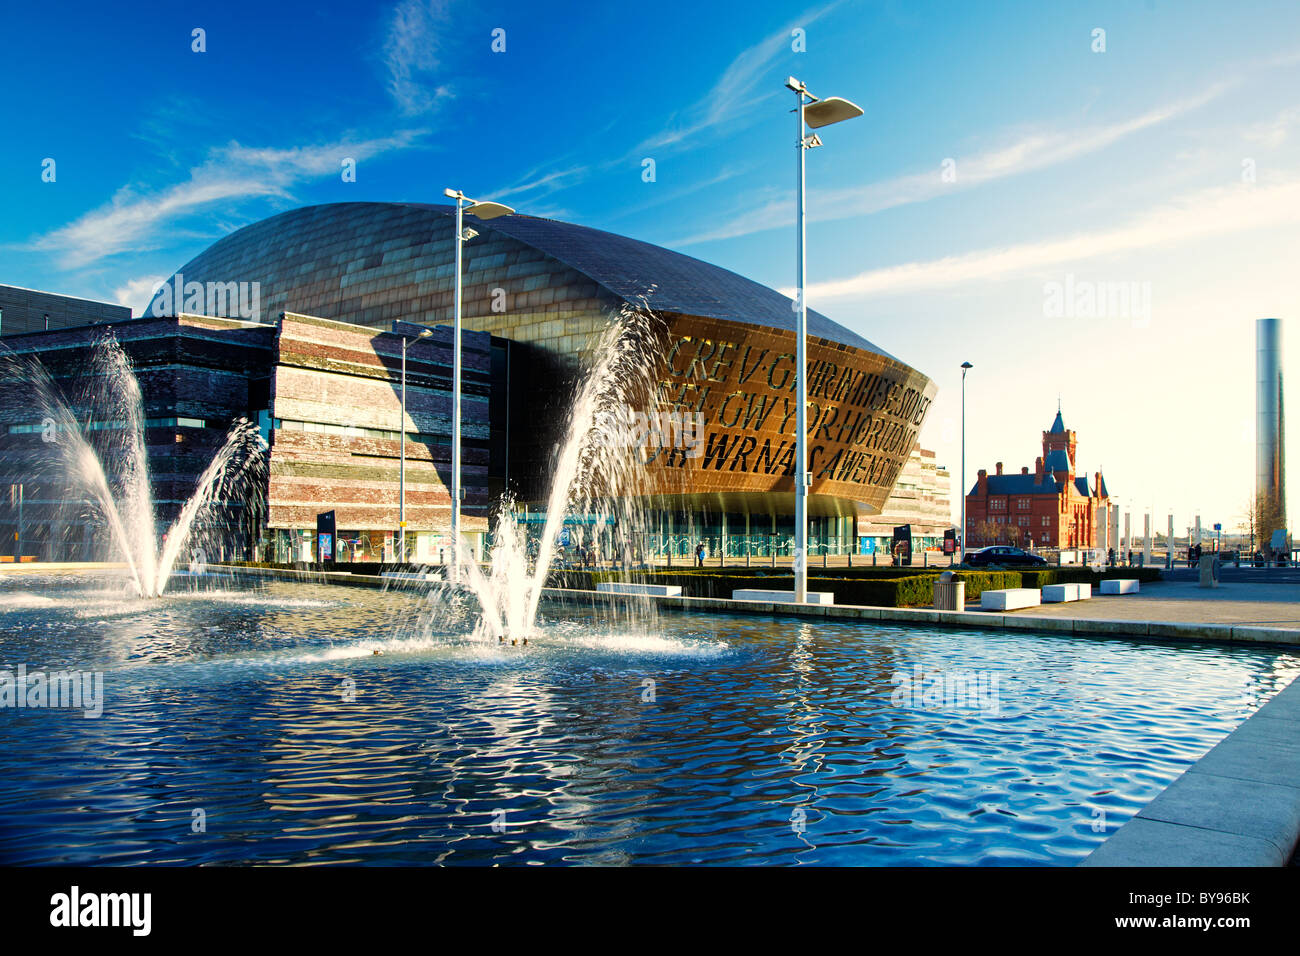 Wales Millennium Centre, la Bahía de Cardiff. País de Gales, Reino Unido Foto de stock